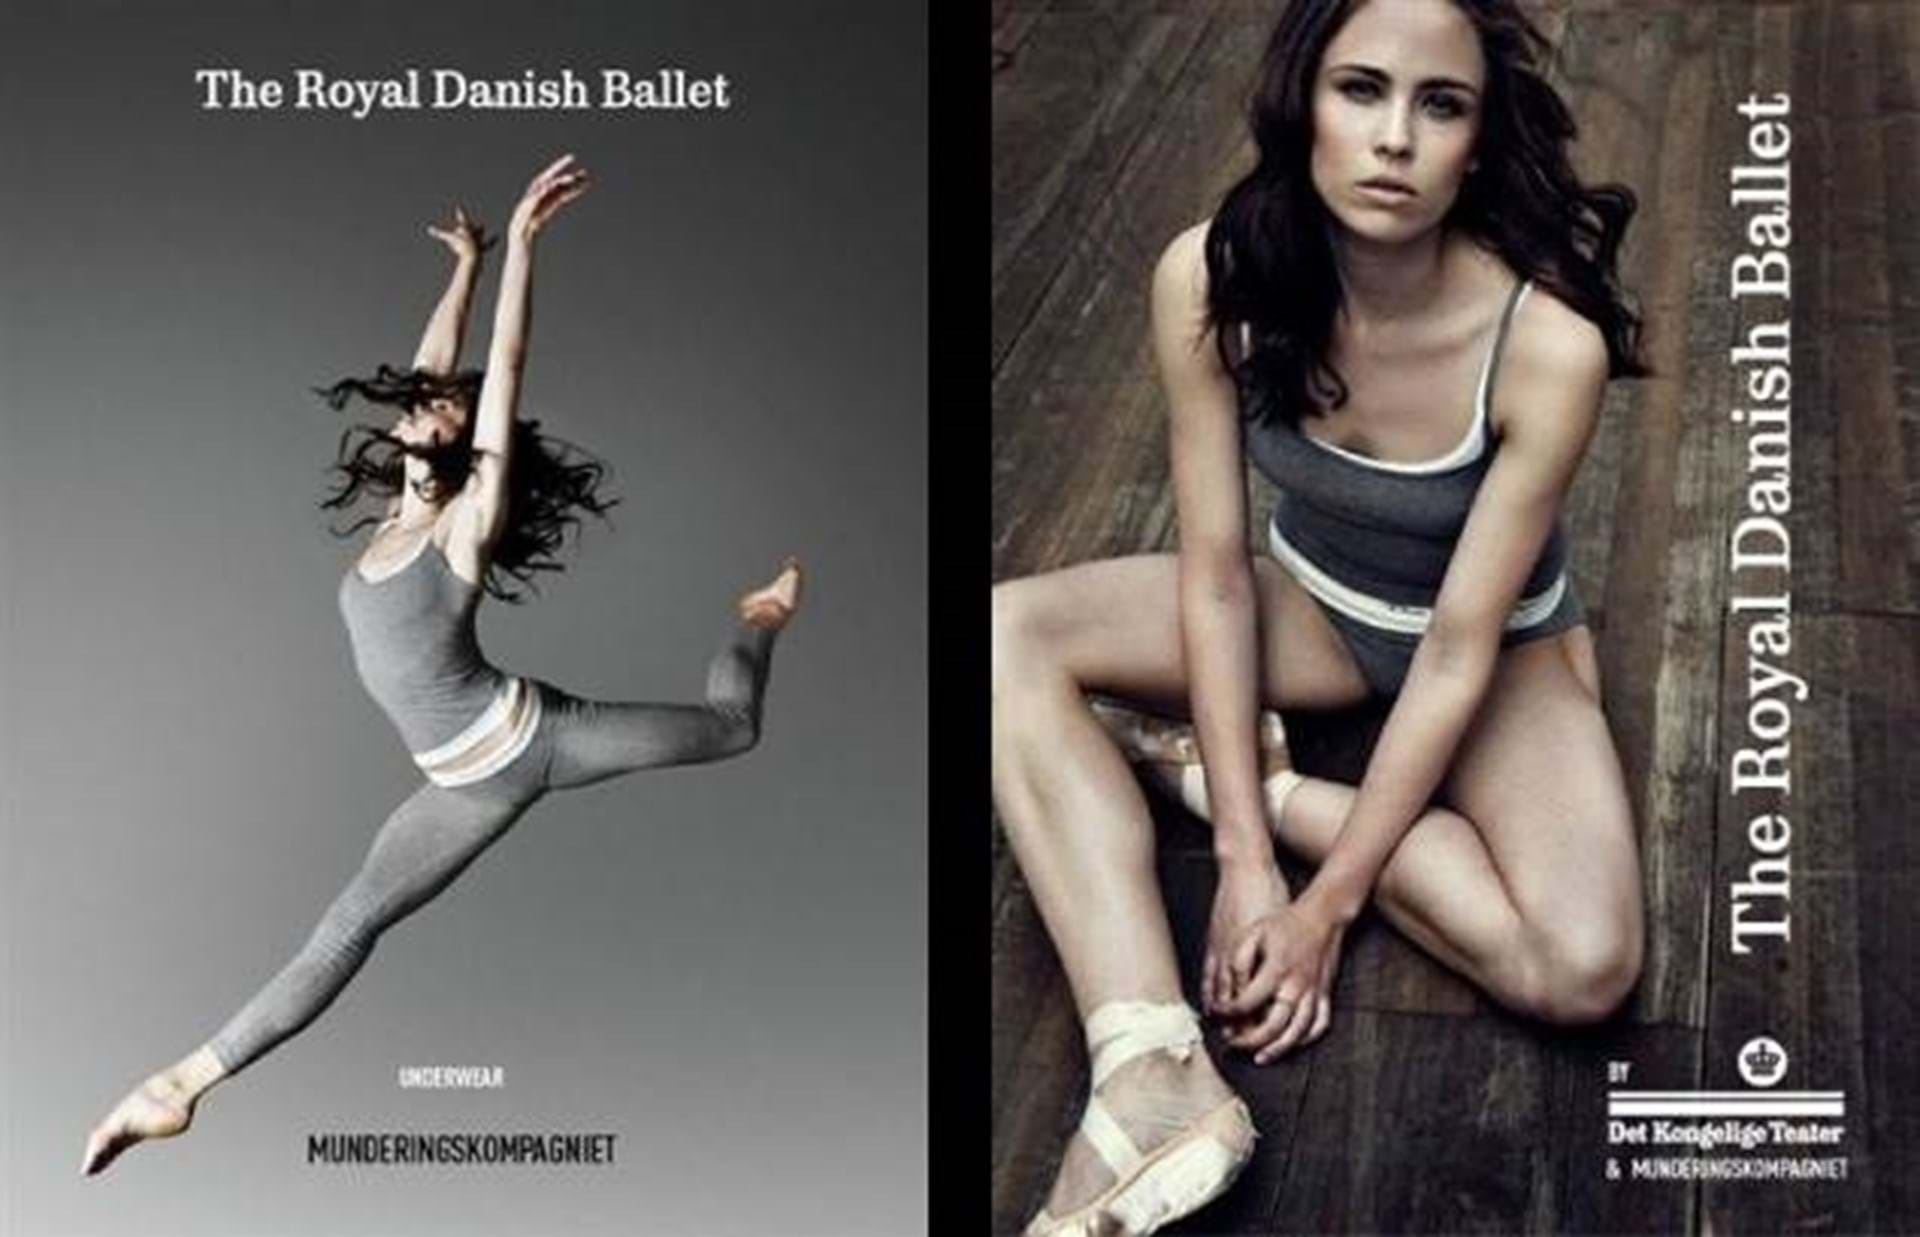 Danske Ballet + Munderingskompagniet lancerer træningstøj - Eurowoman - ALT.dk